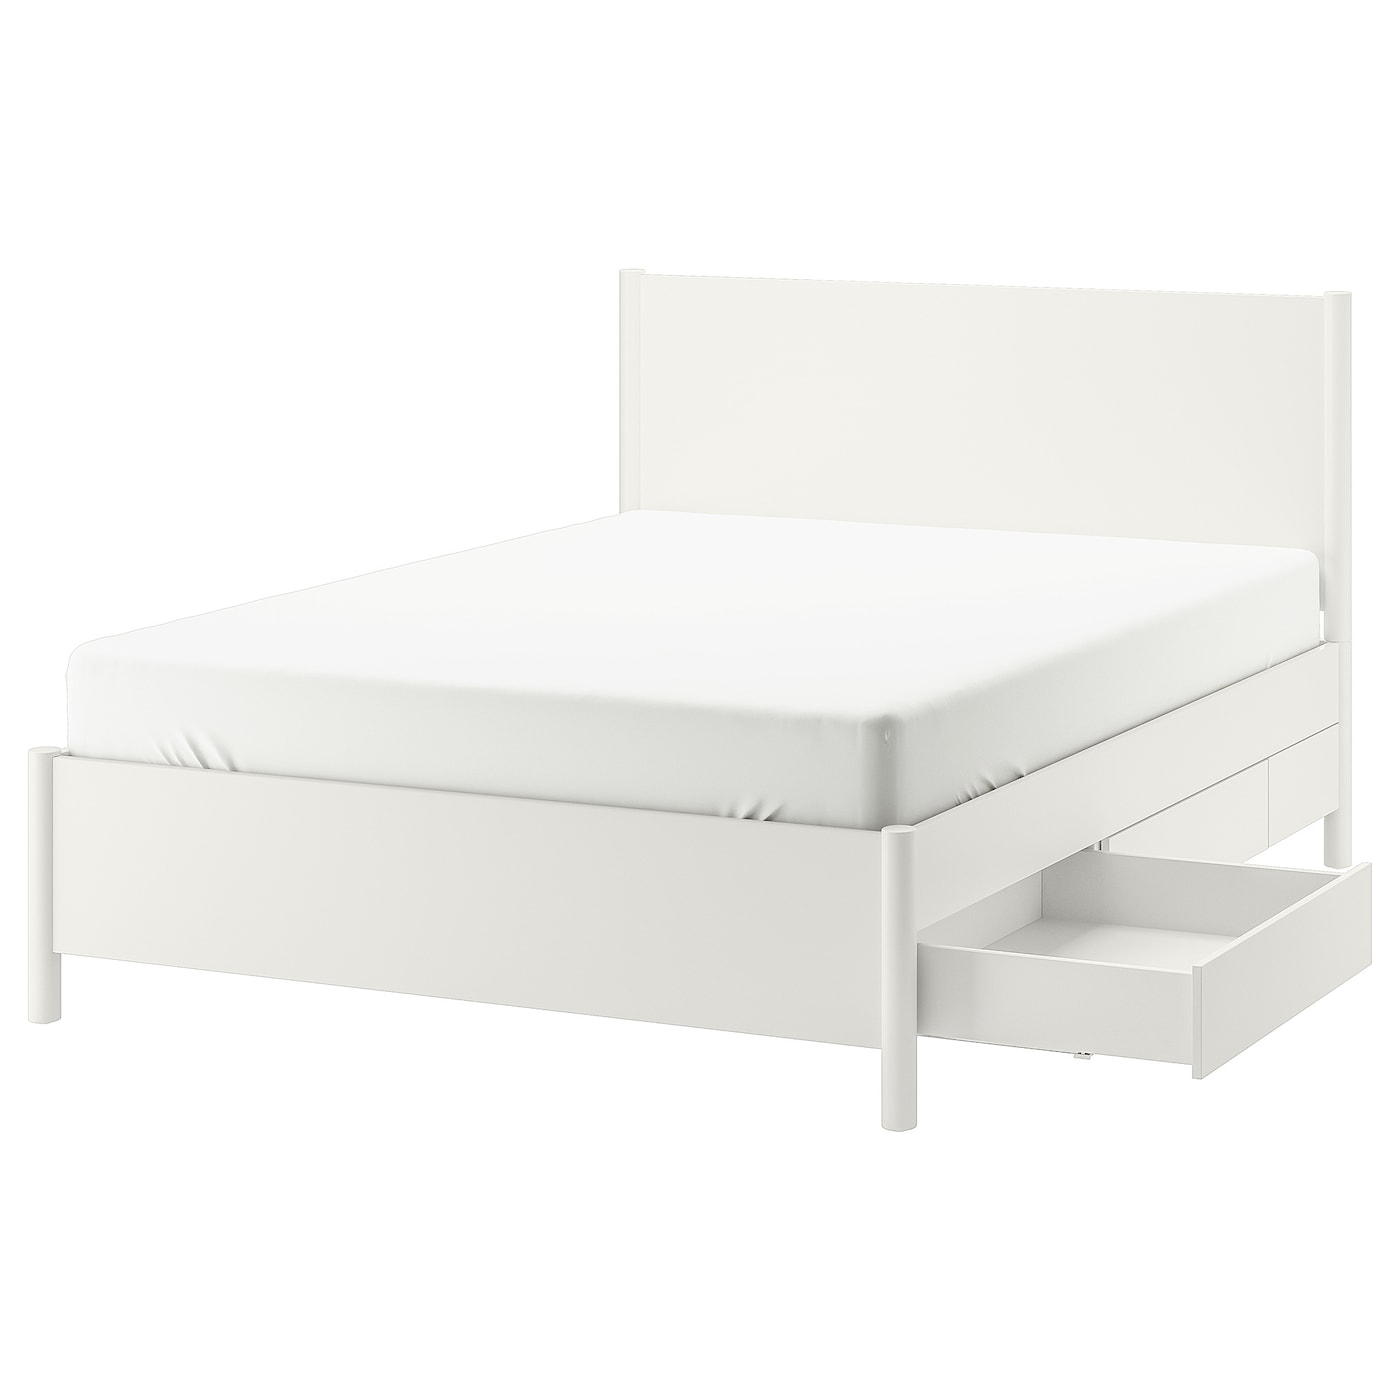 Каркас кровати - TONSTAD IKEA/ ТОНСТАД ИКЕА,  209х169 см, белый